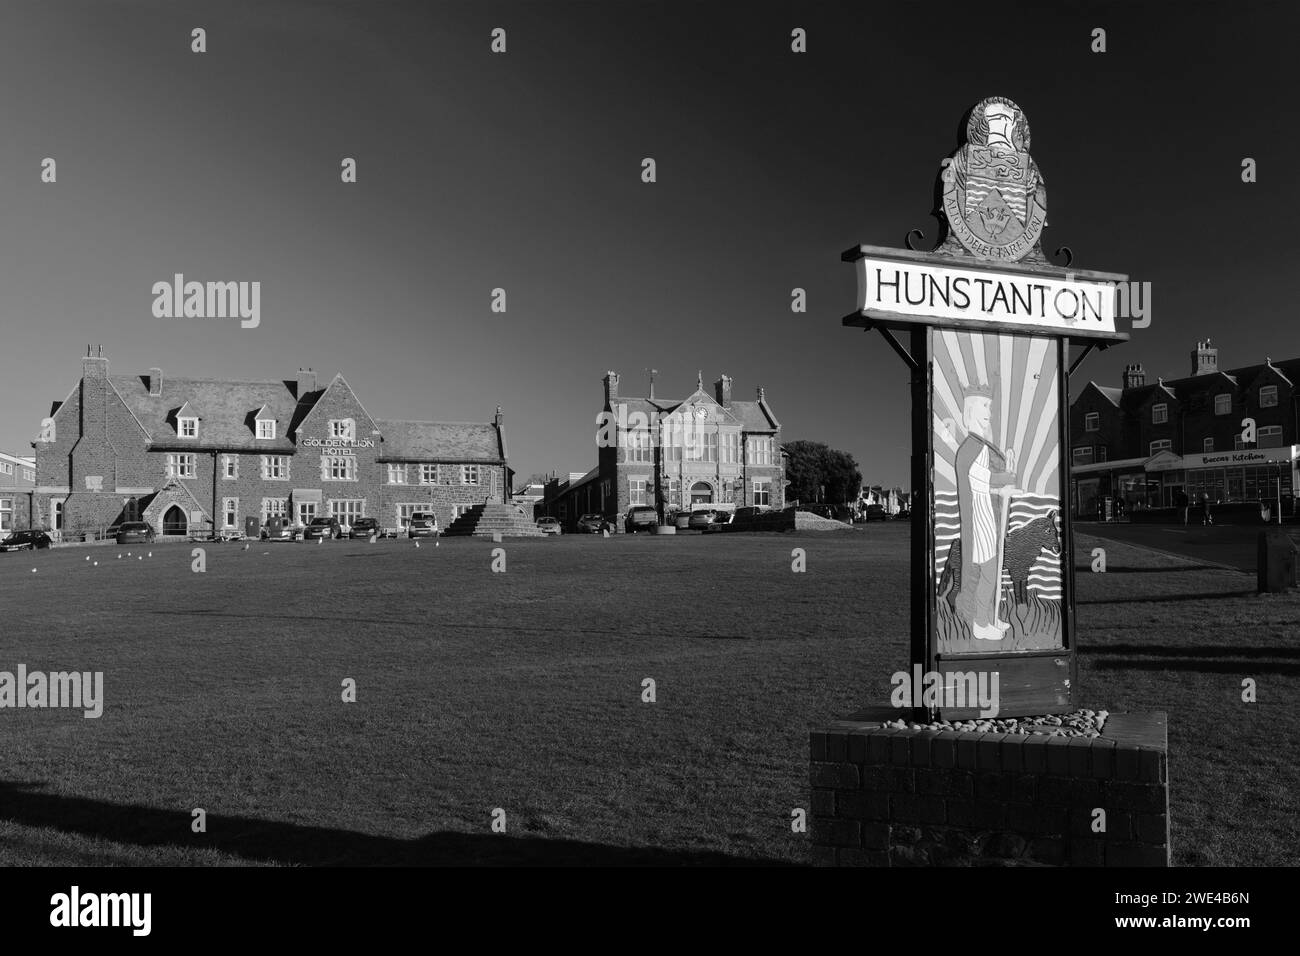 Le panneau de la ville de Hunstanton, North Norfolk, Angleterre, Royaume-Uni Banque D'Images